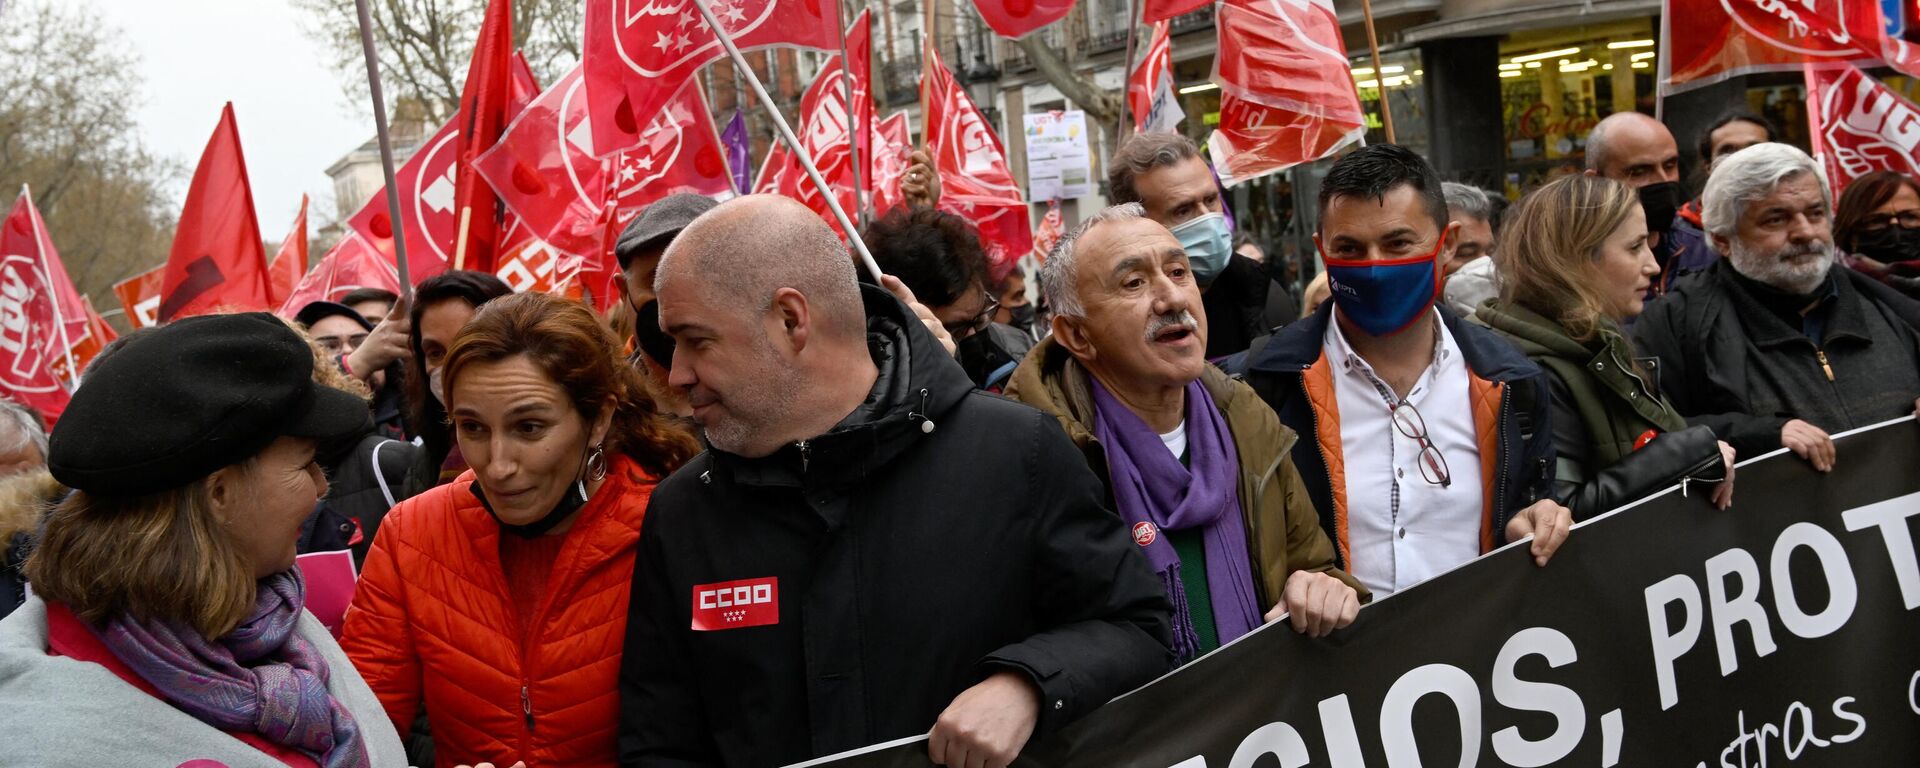 Акция протеста в Мадриде против роста цен на продукты, топливо и другие товары, 23 марта 2022 года  - Sputnik Латвия, 1920, 25.03.2022